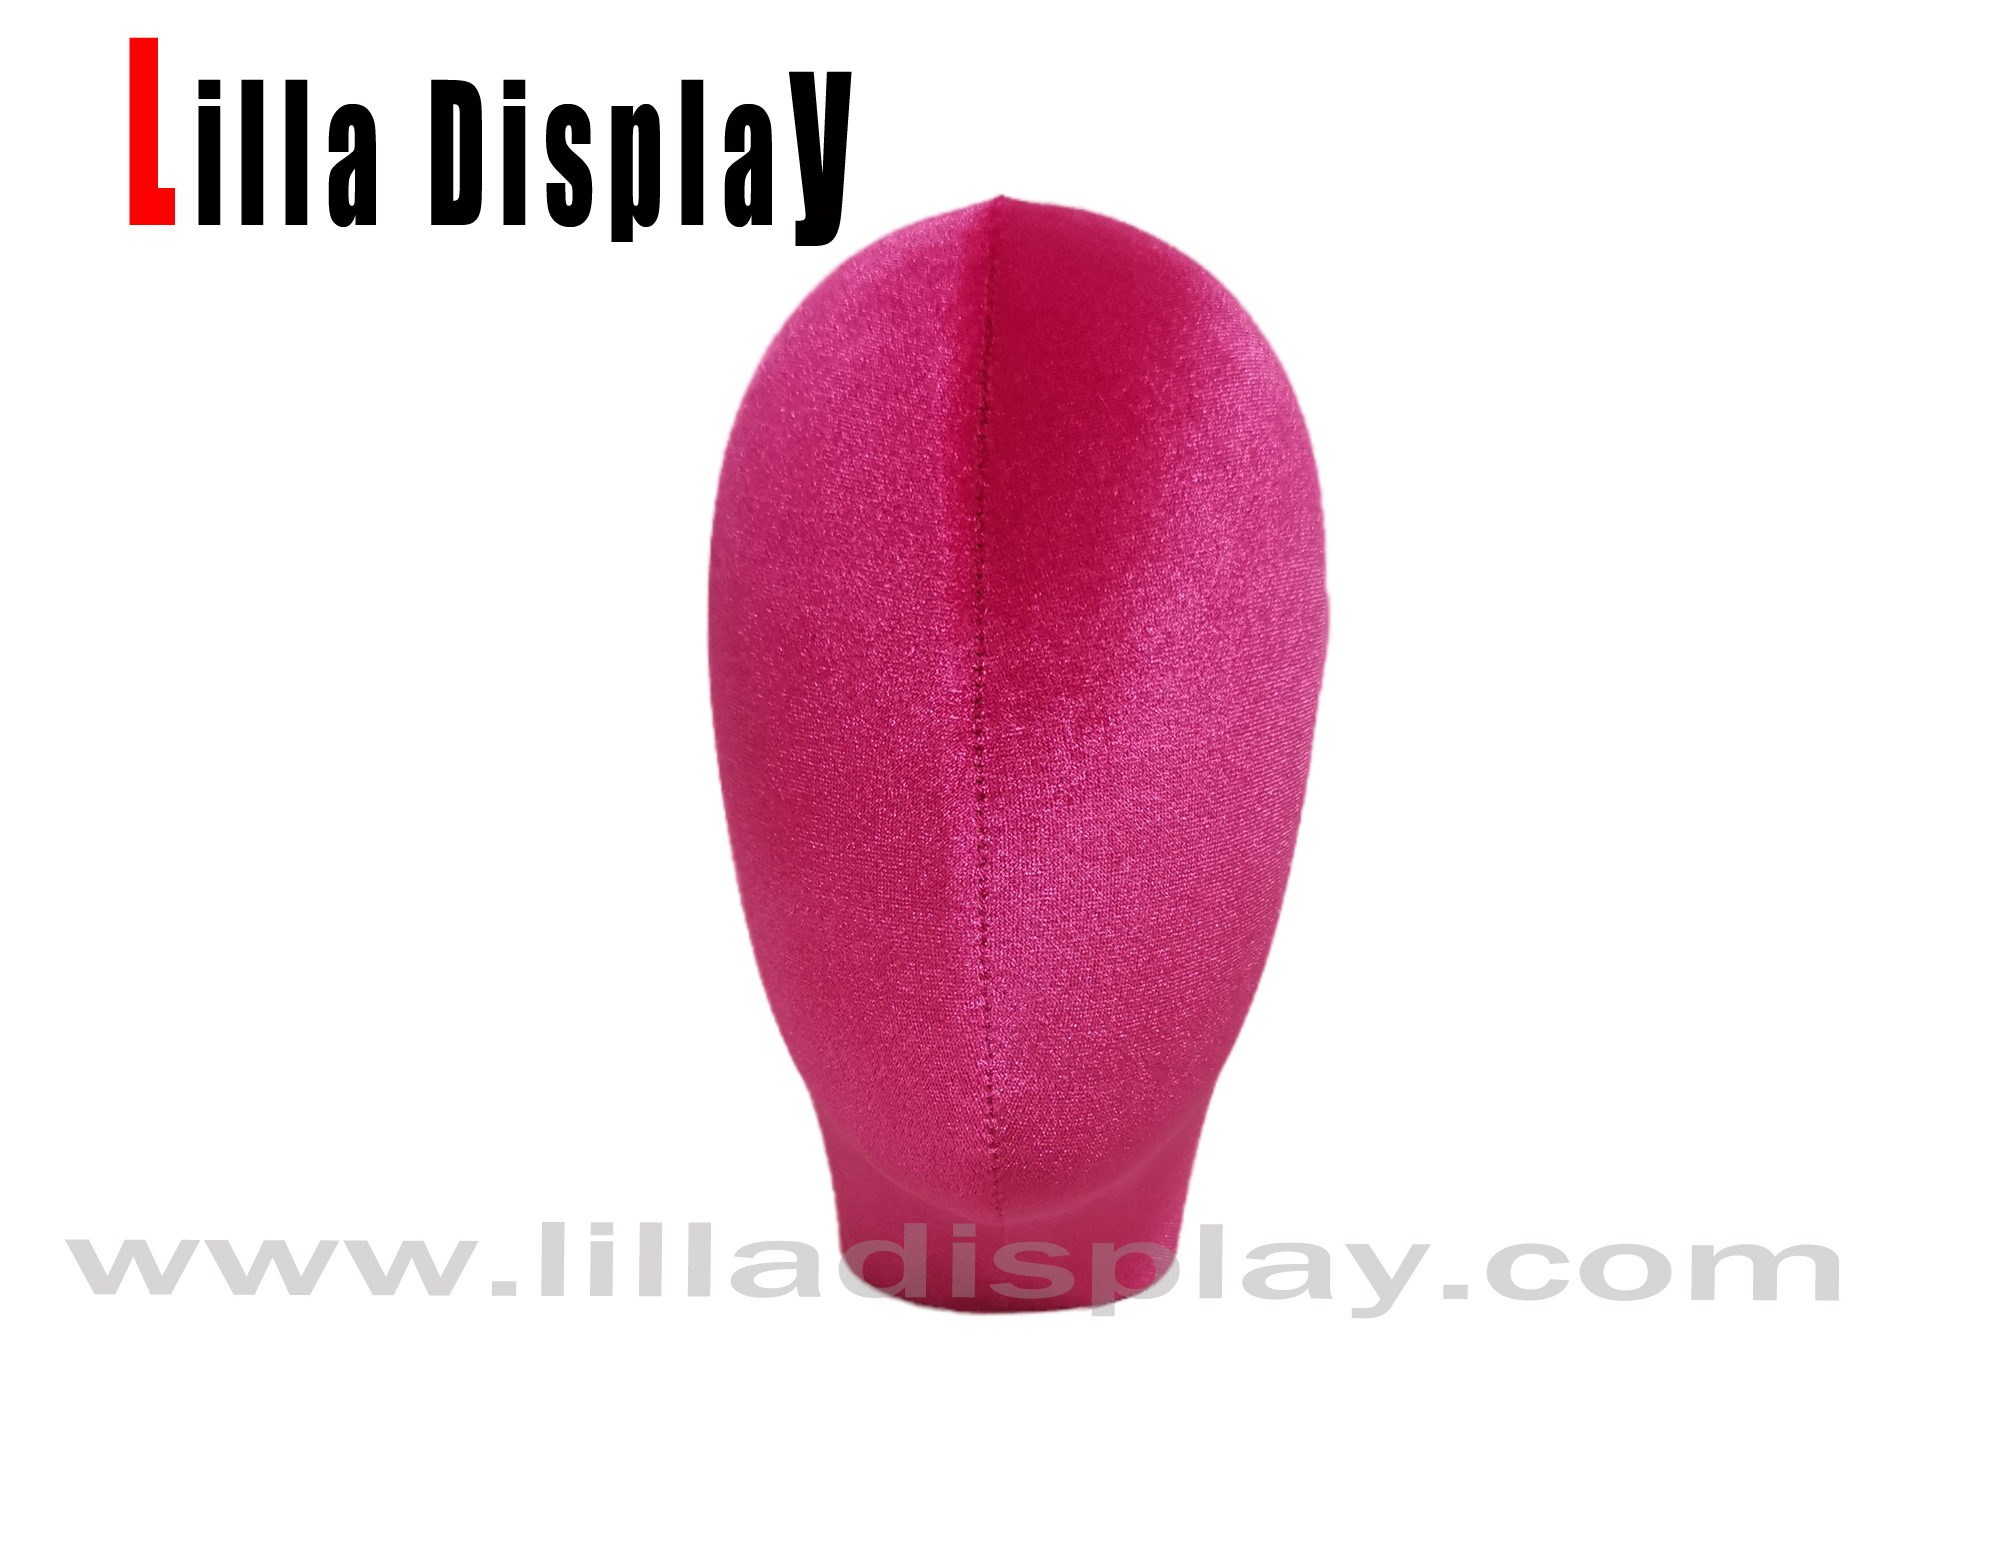 liladisplay rosa choque 38 cabeça de manequim usd lucy para exibição de turbante